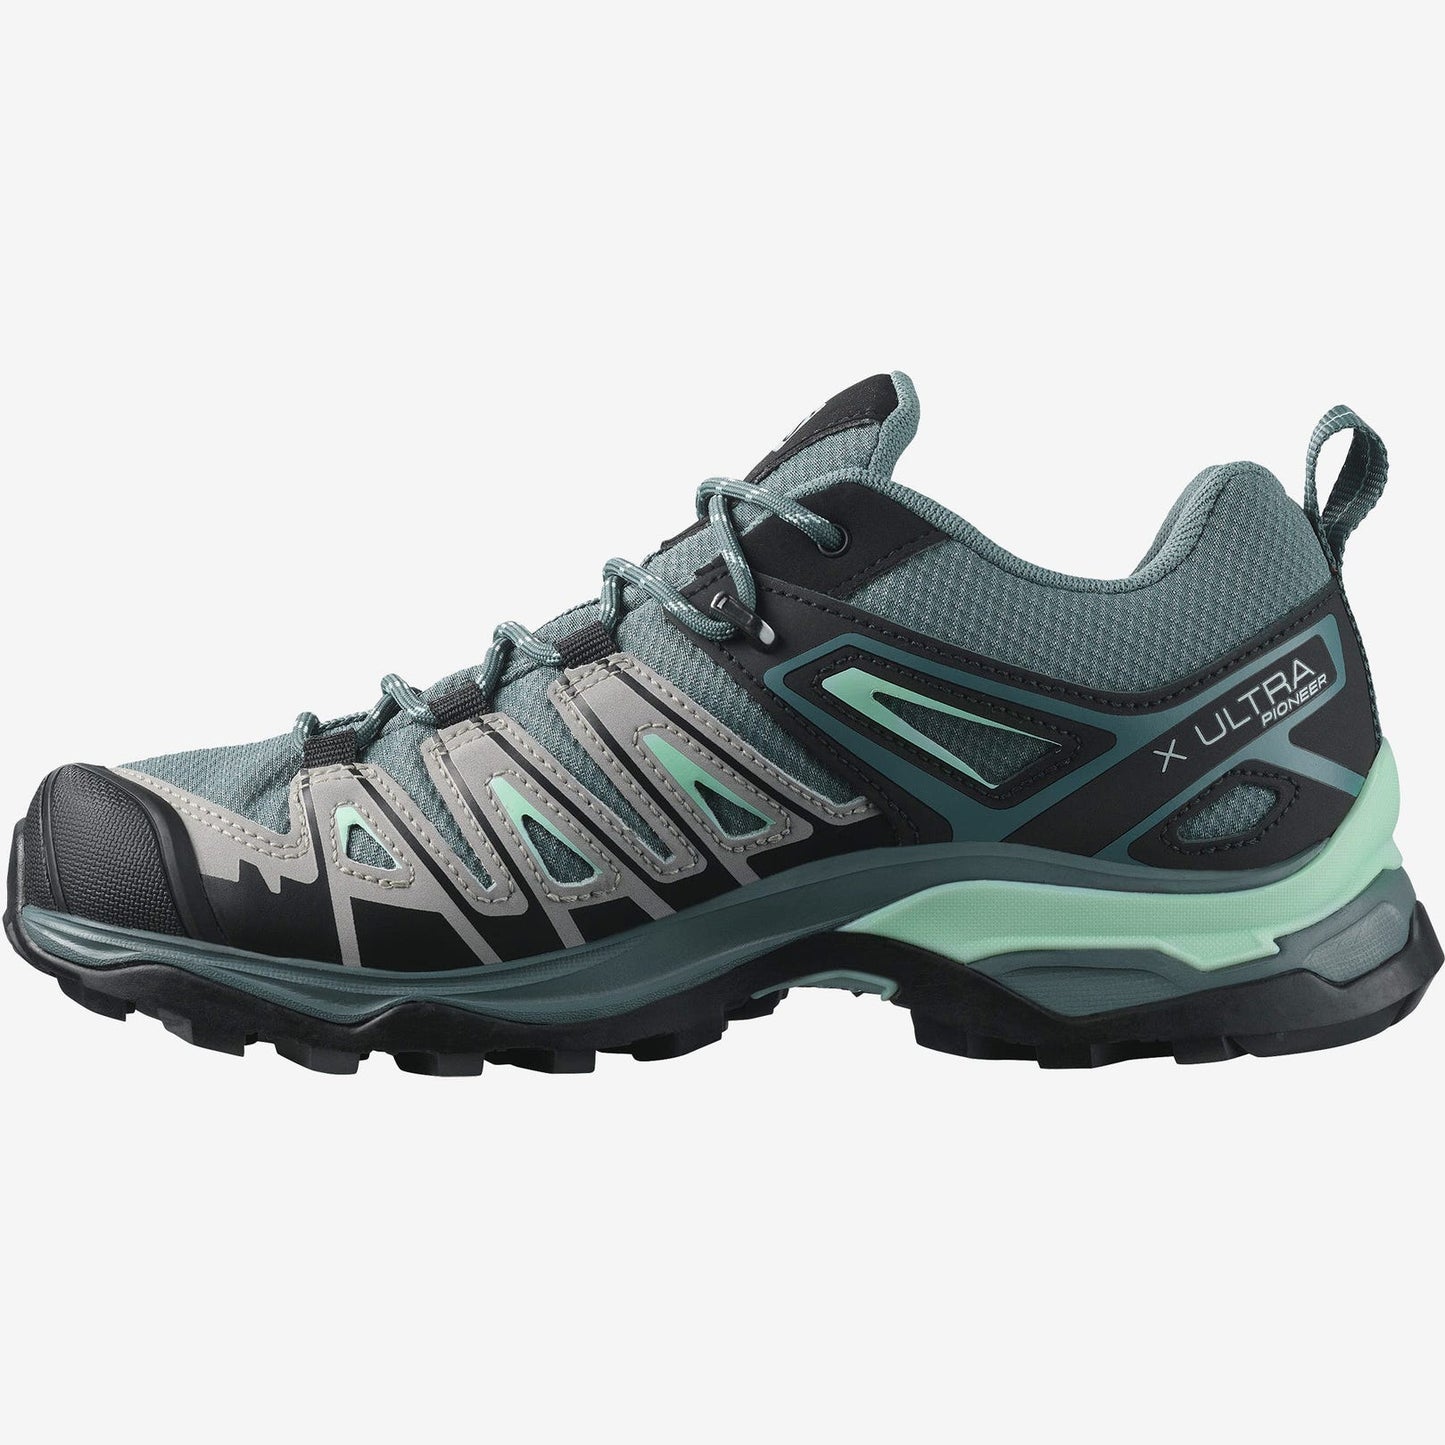 Salomon Women's X Ultra Pioneer Climasalomon Waterproof Hiking Shoes